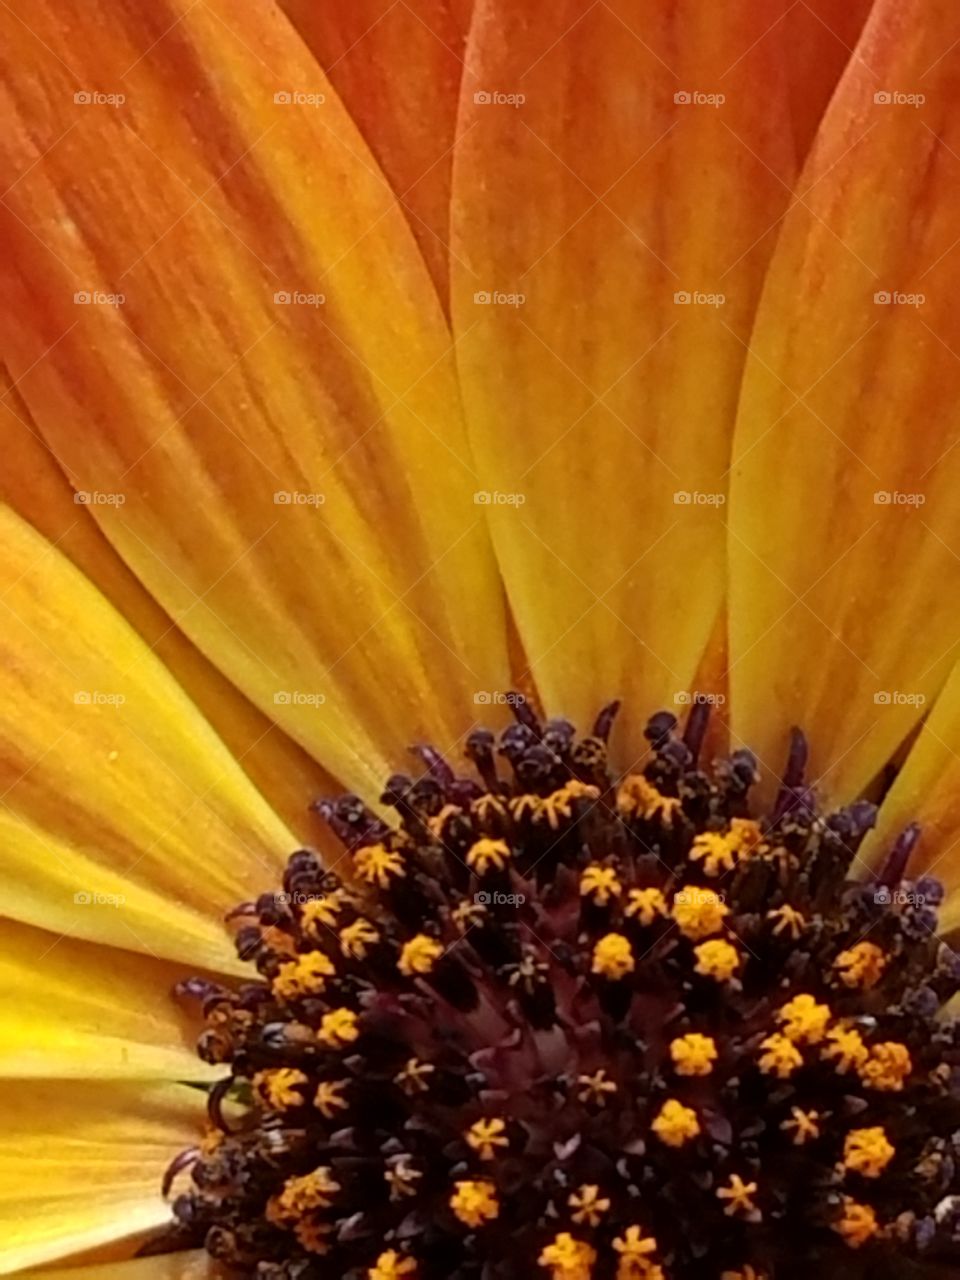 Sunburst daisy.